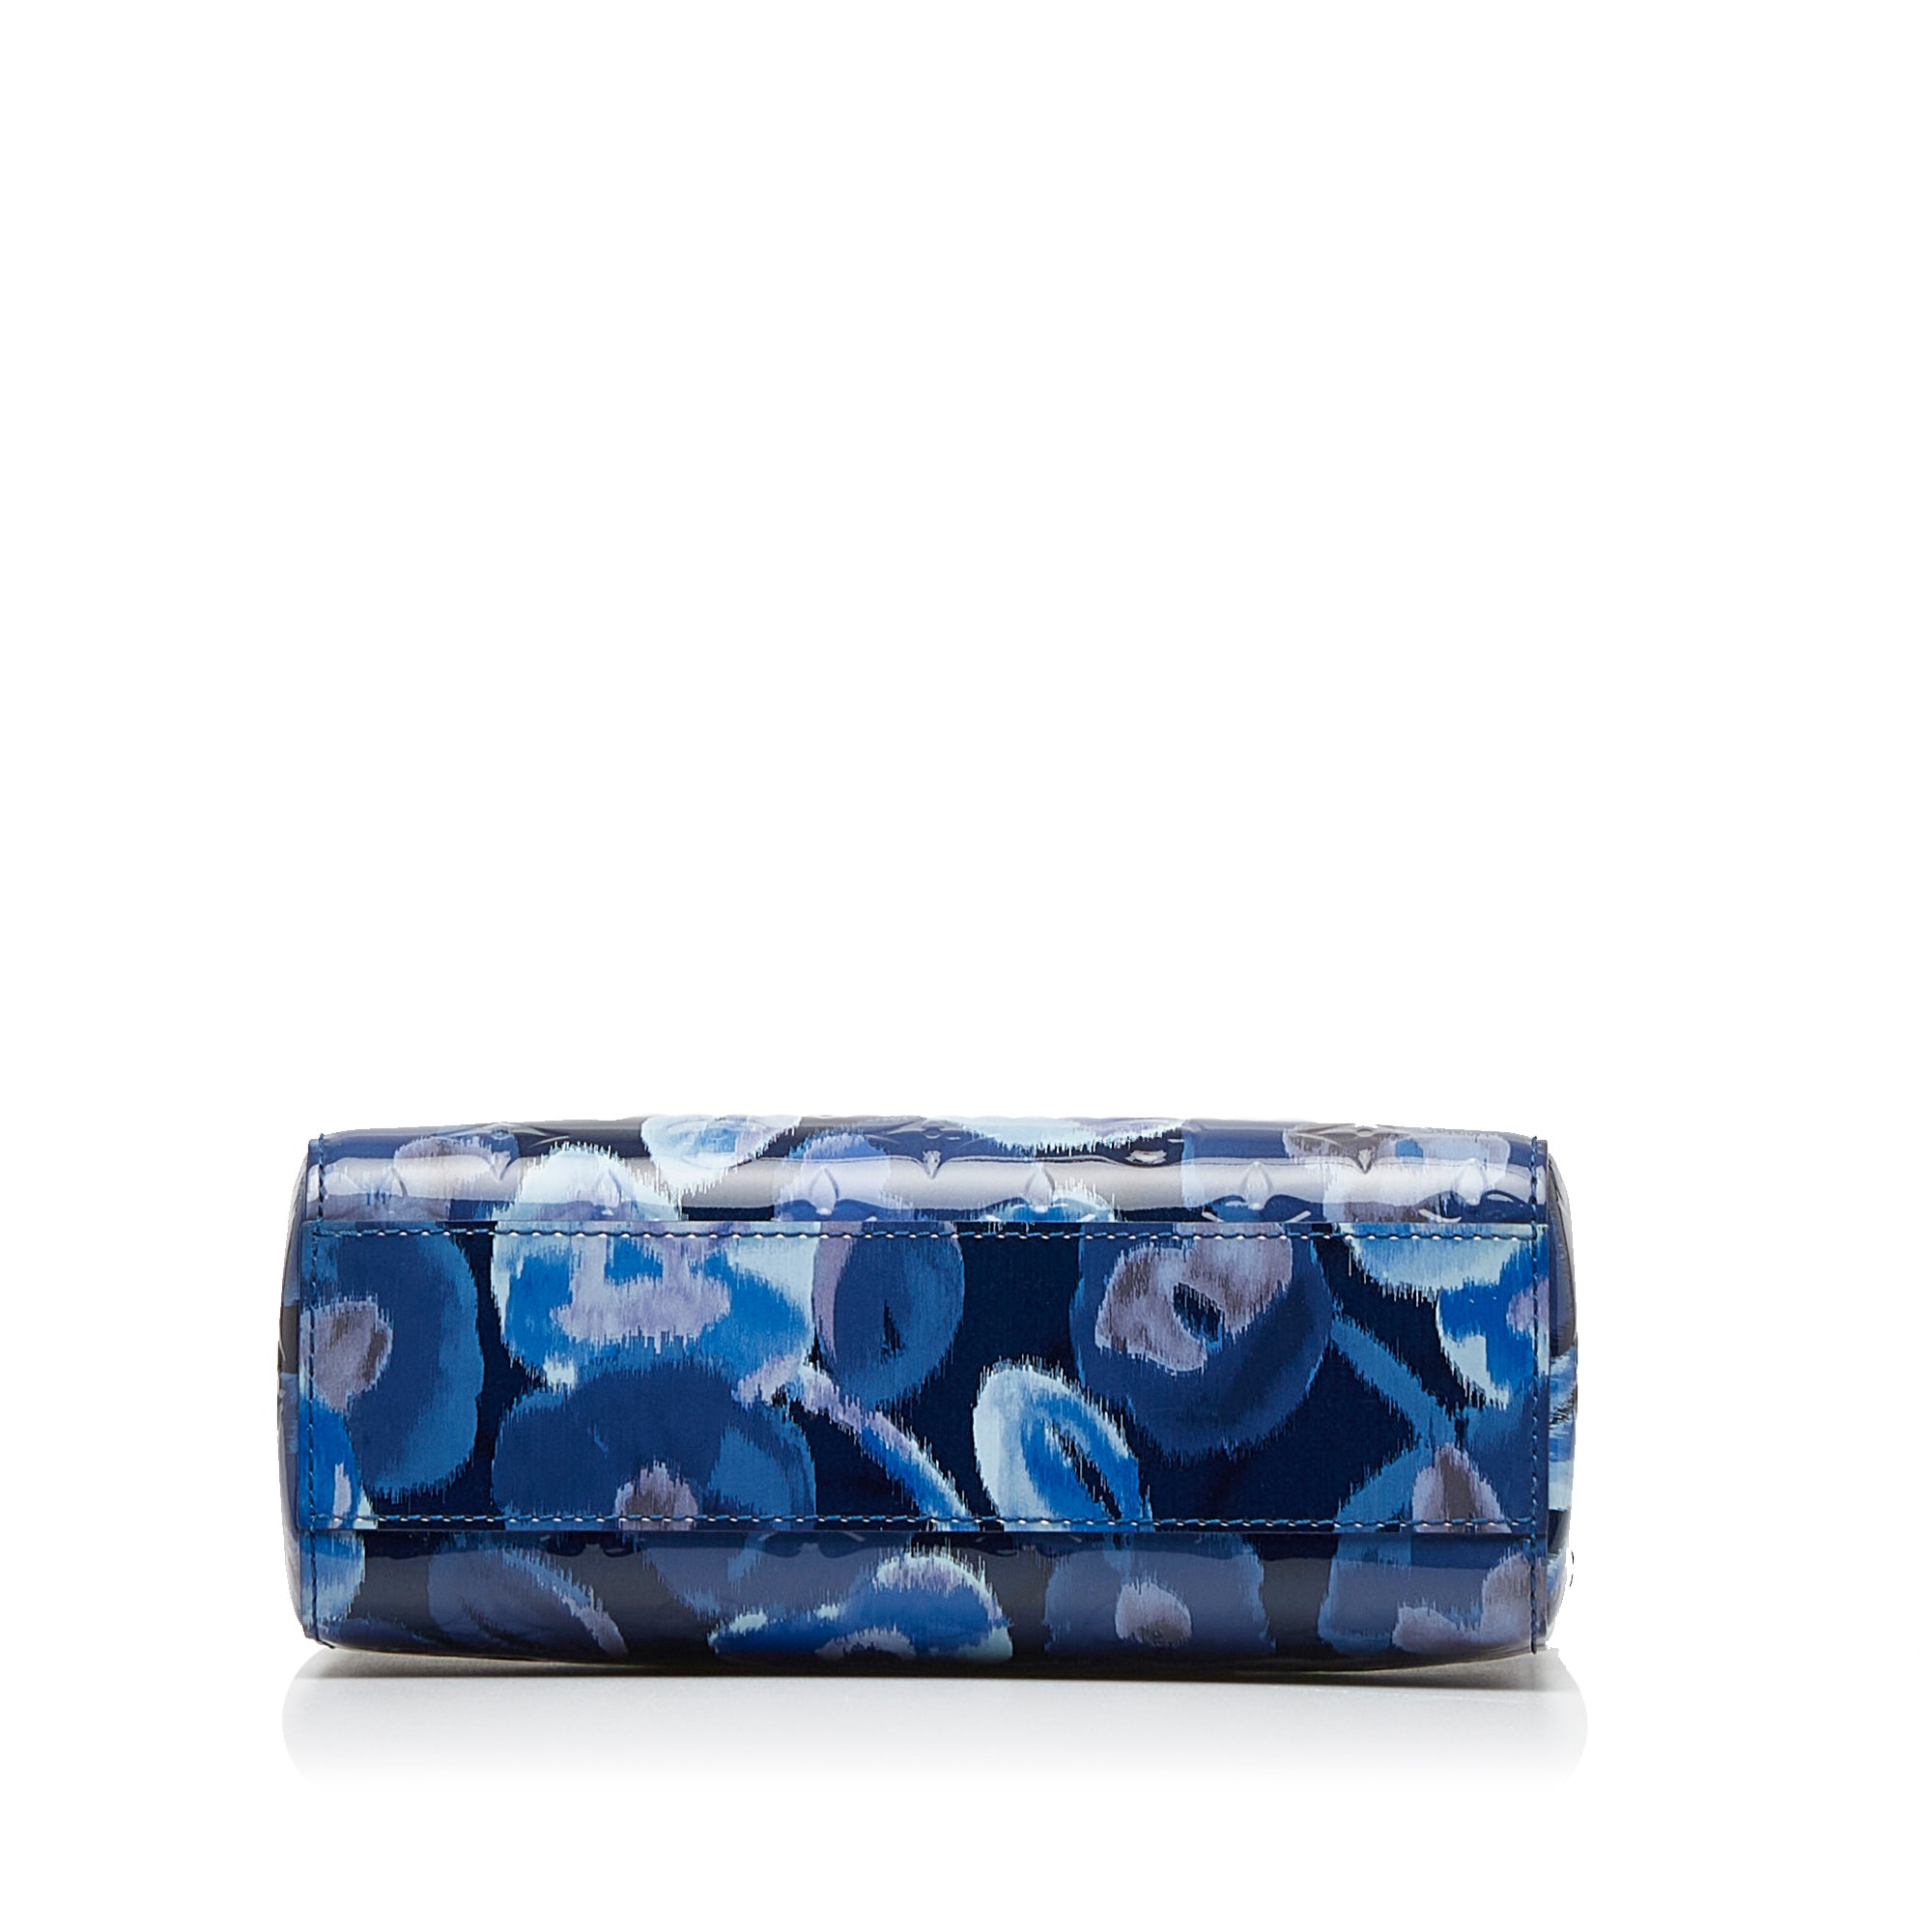 Blue Louis Vuitton Vernis Catalina Ikat BB Handbag